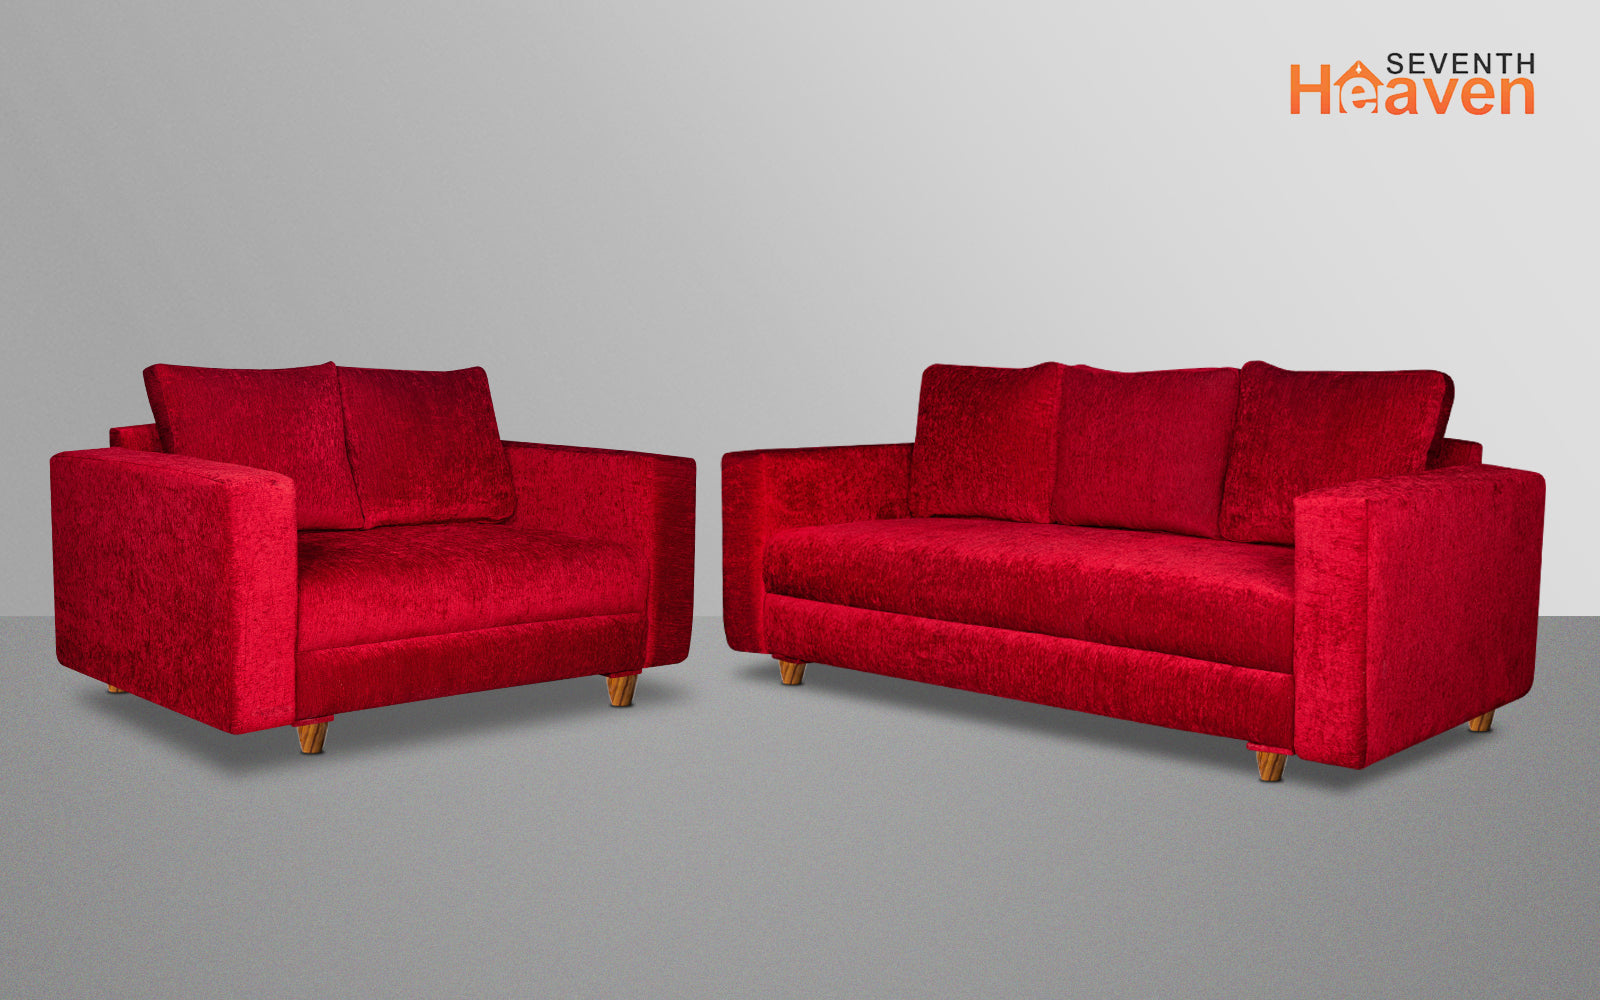 Rio 5 Seater Sofa Set, Chenille Molfino Fabric (Finish Color -Maroon, Style - 3 + 2)